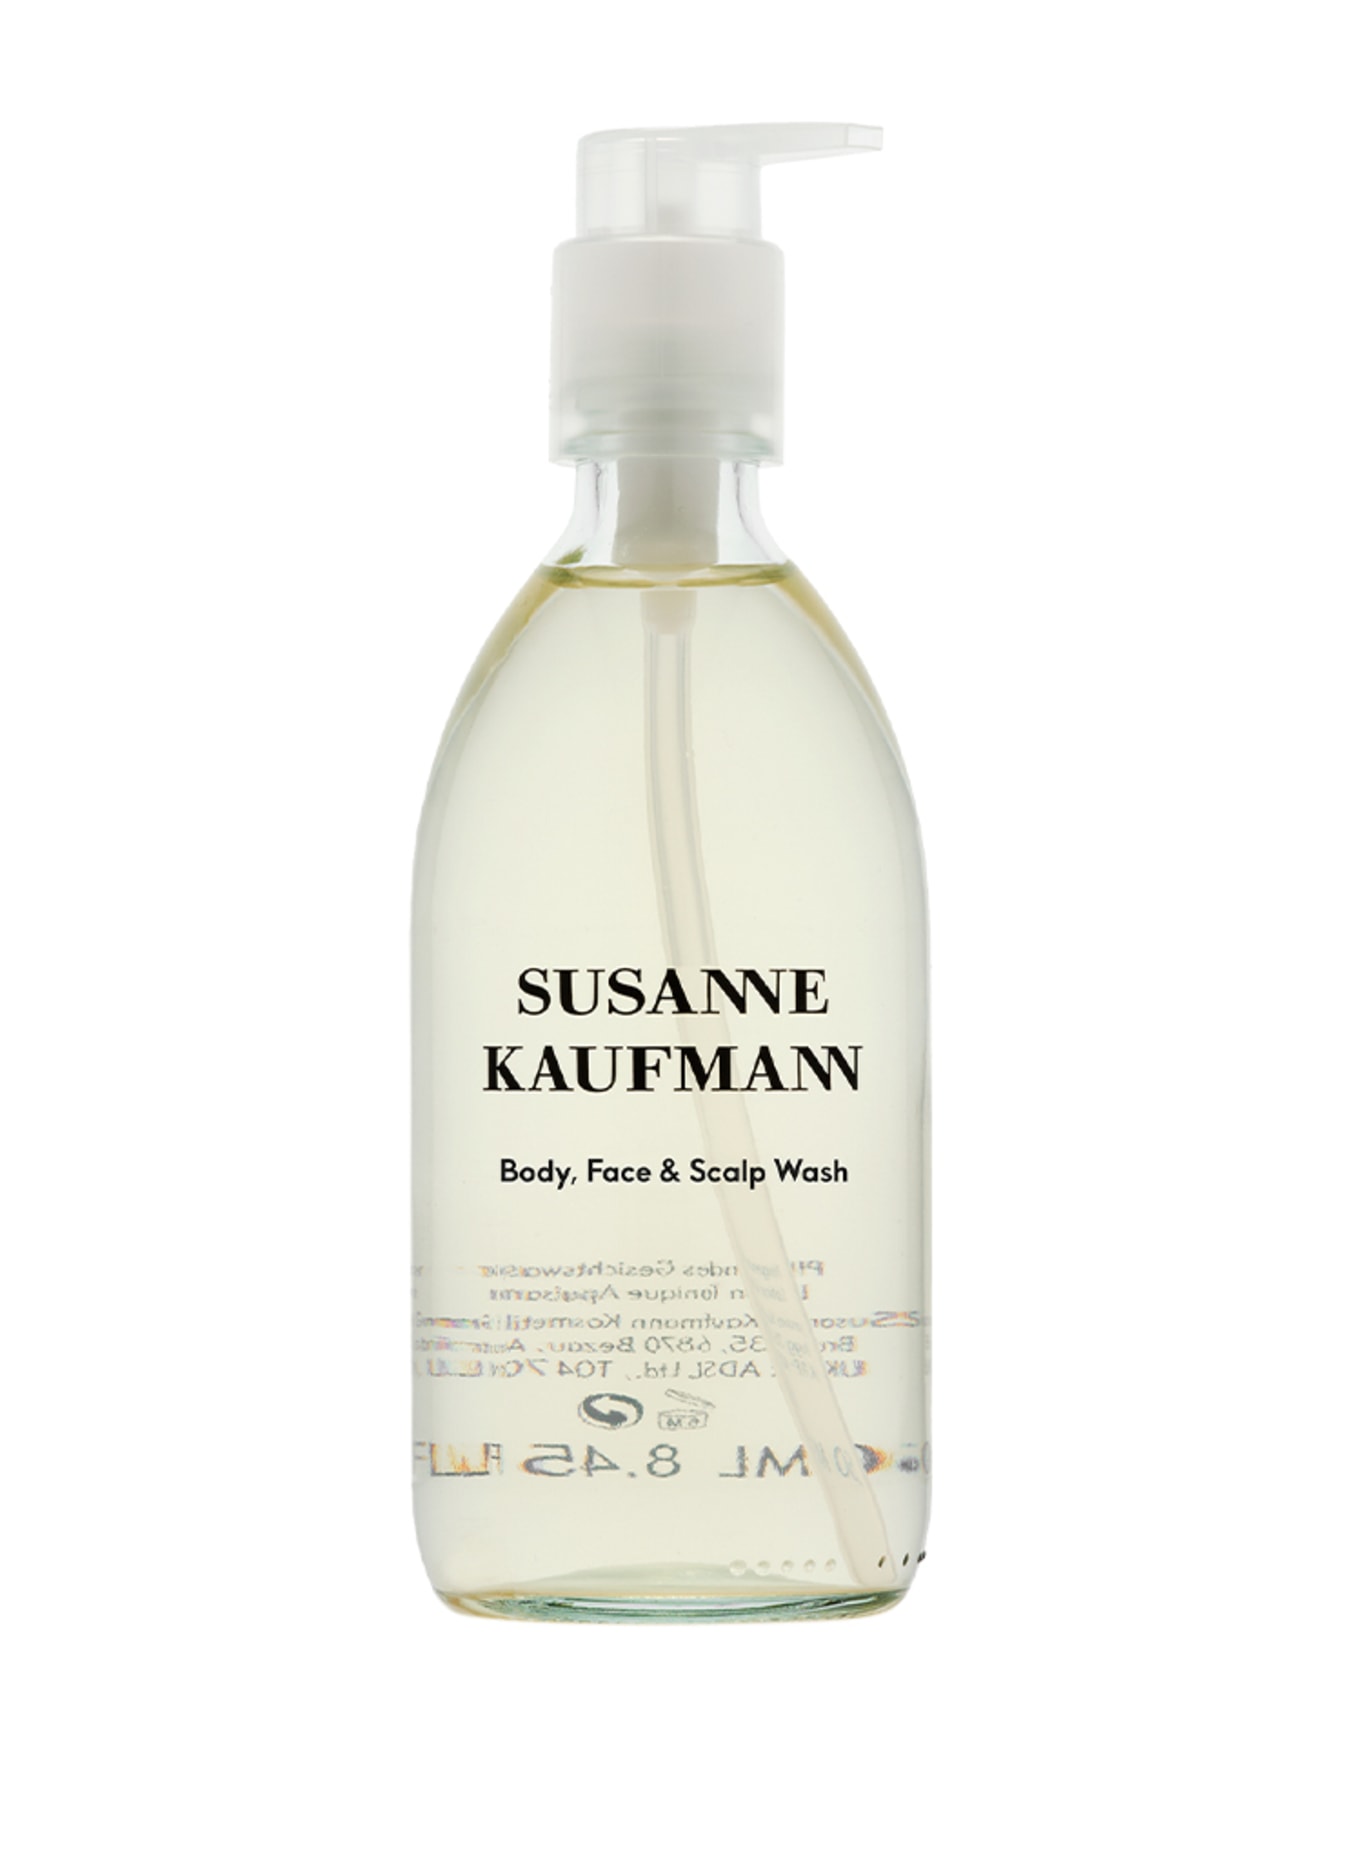 SUSANNE KAUFMANN BODY FACE & SCALP WASH (Bild 1)